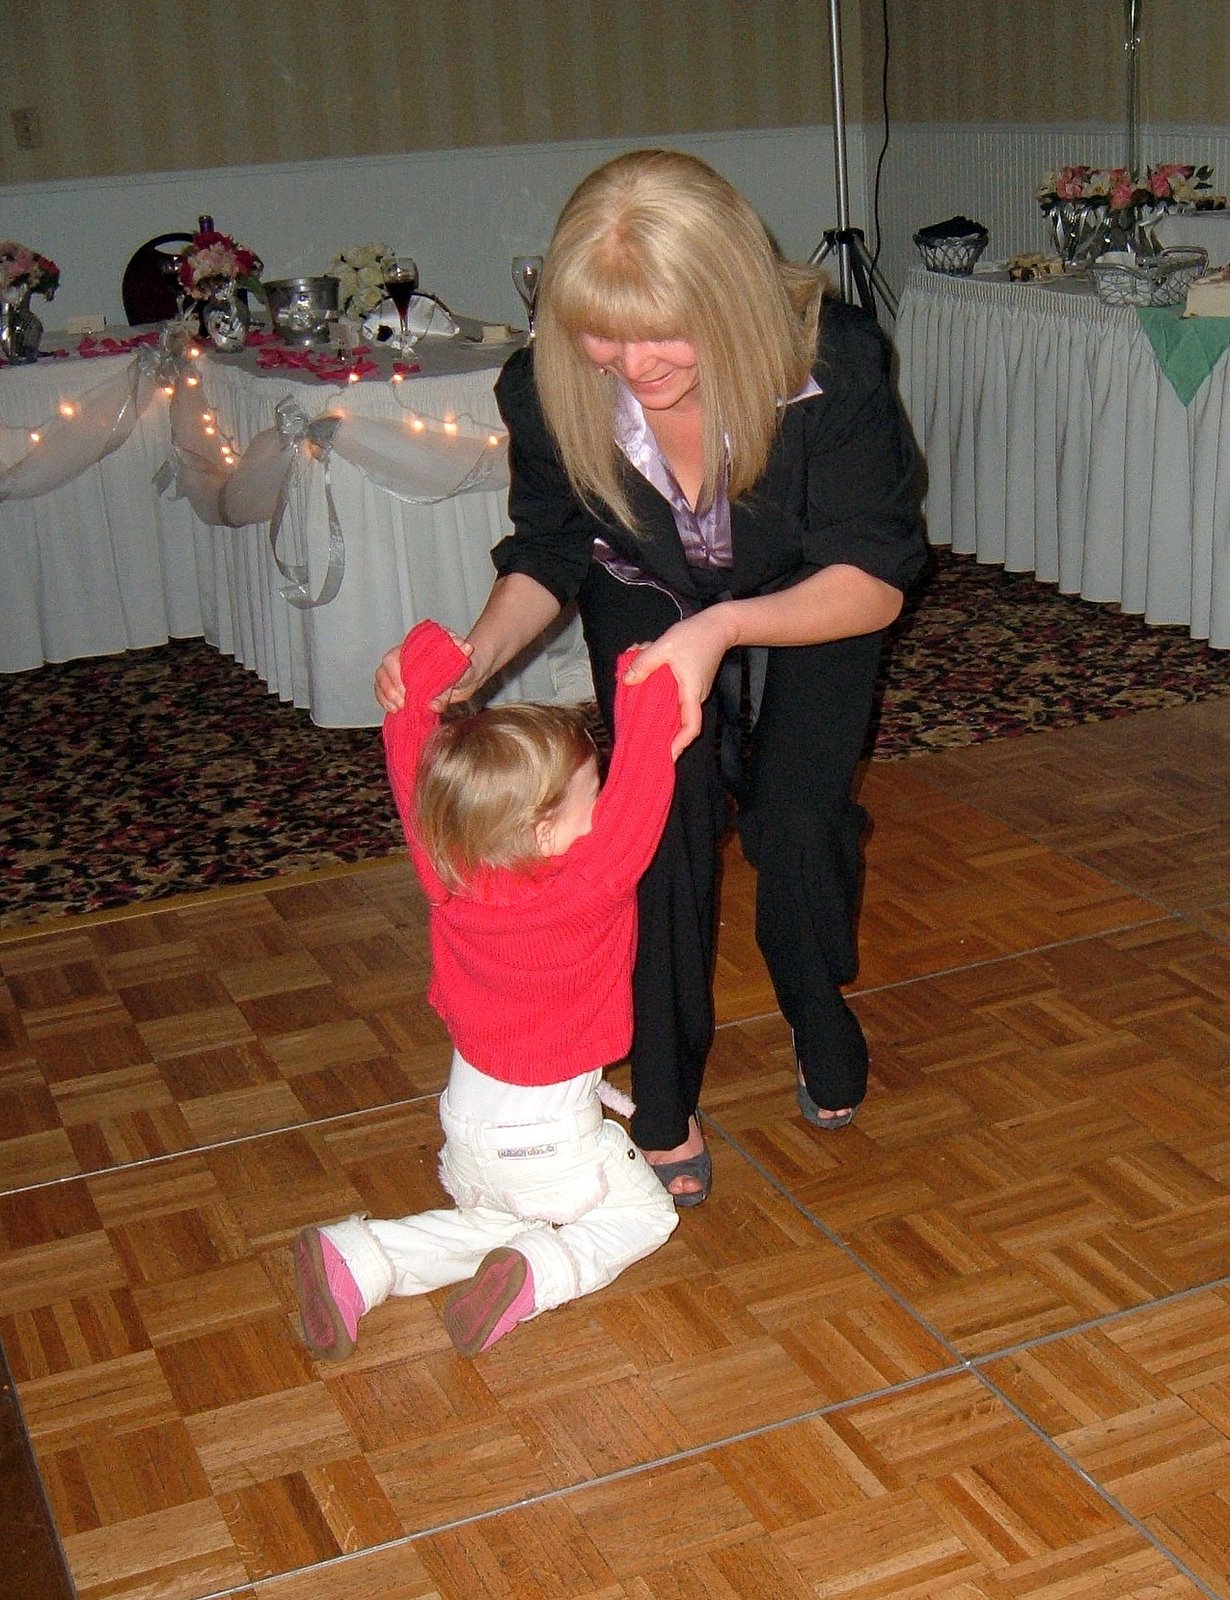 [Toddler+and+Mom+on+dance+floor.jpg]